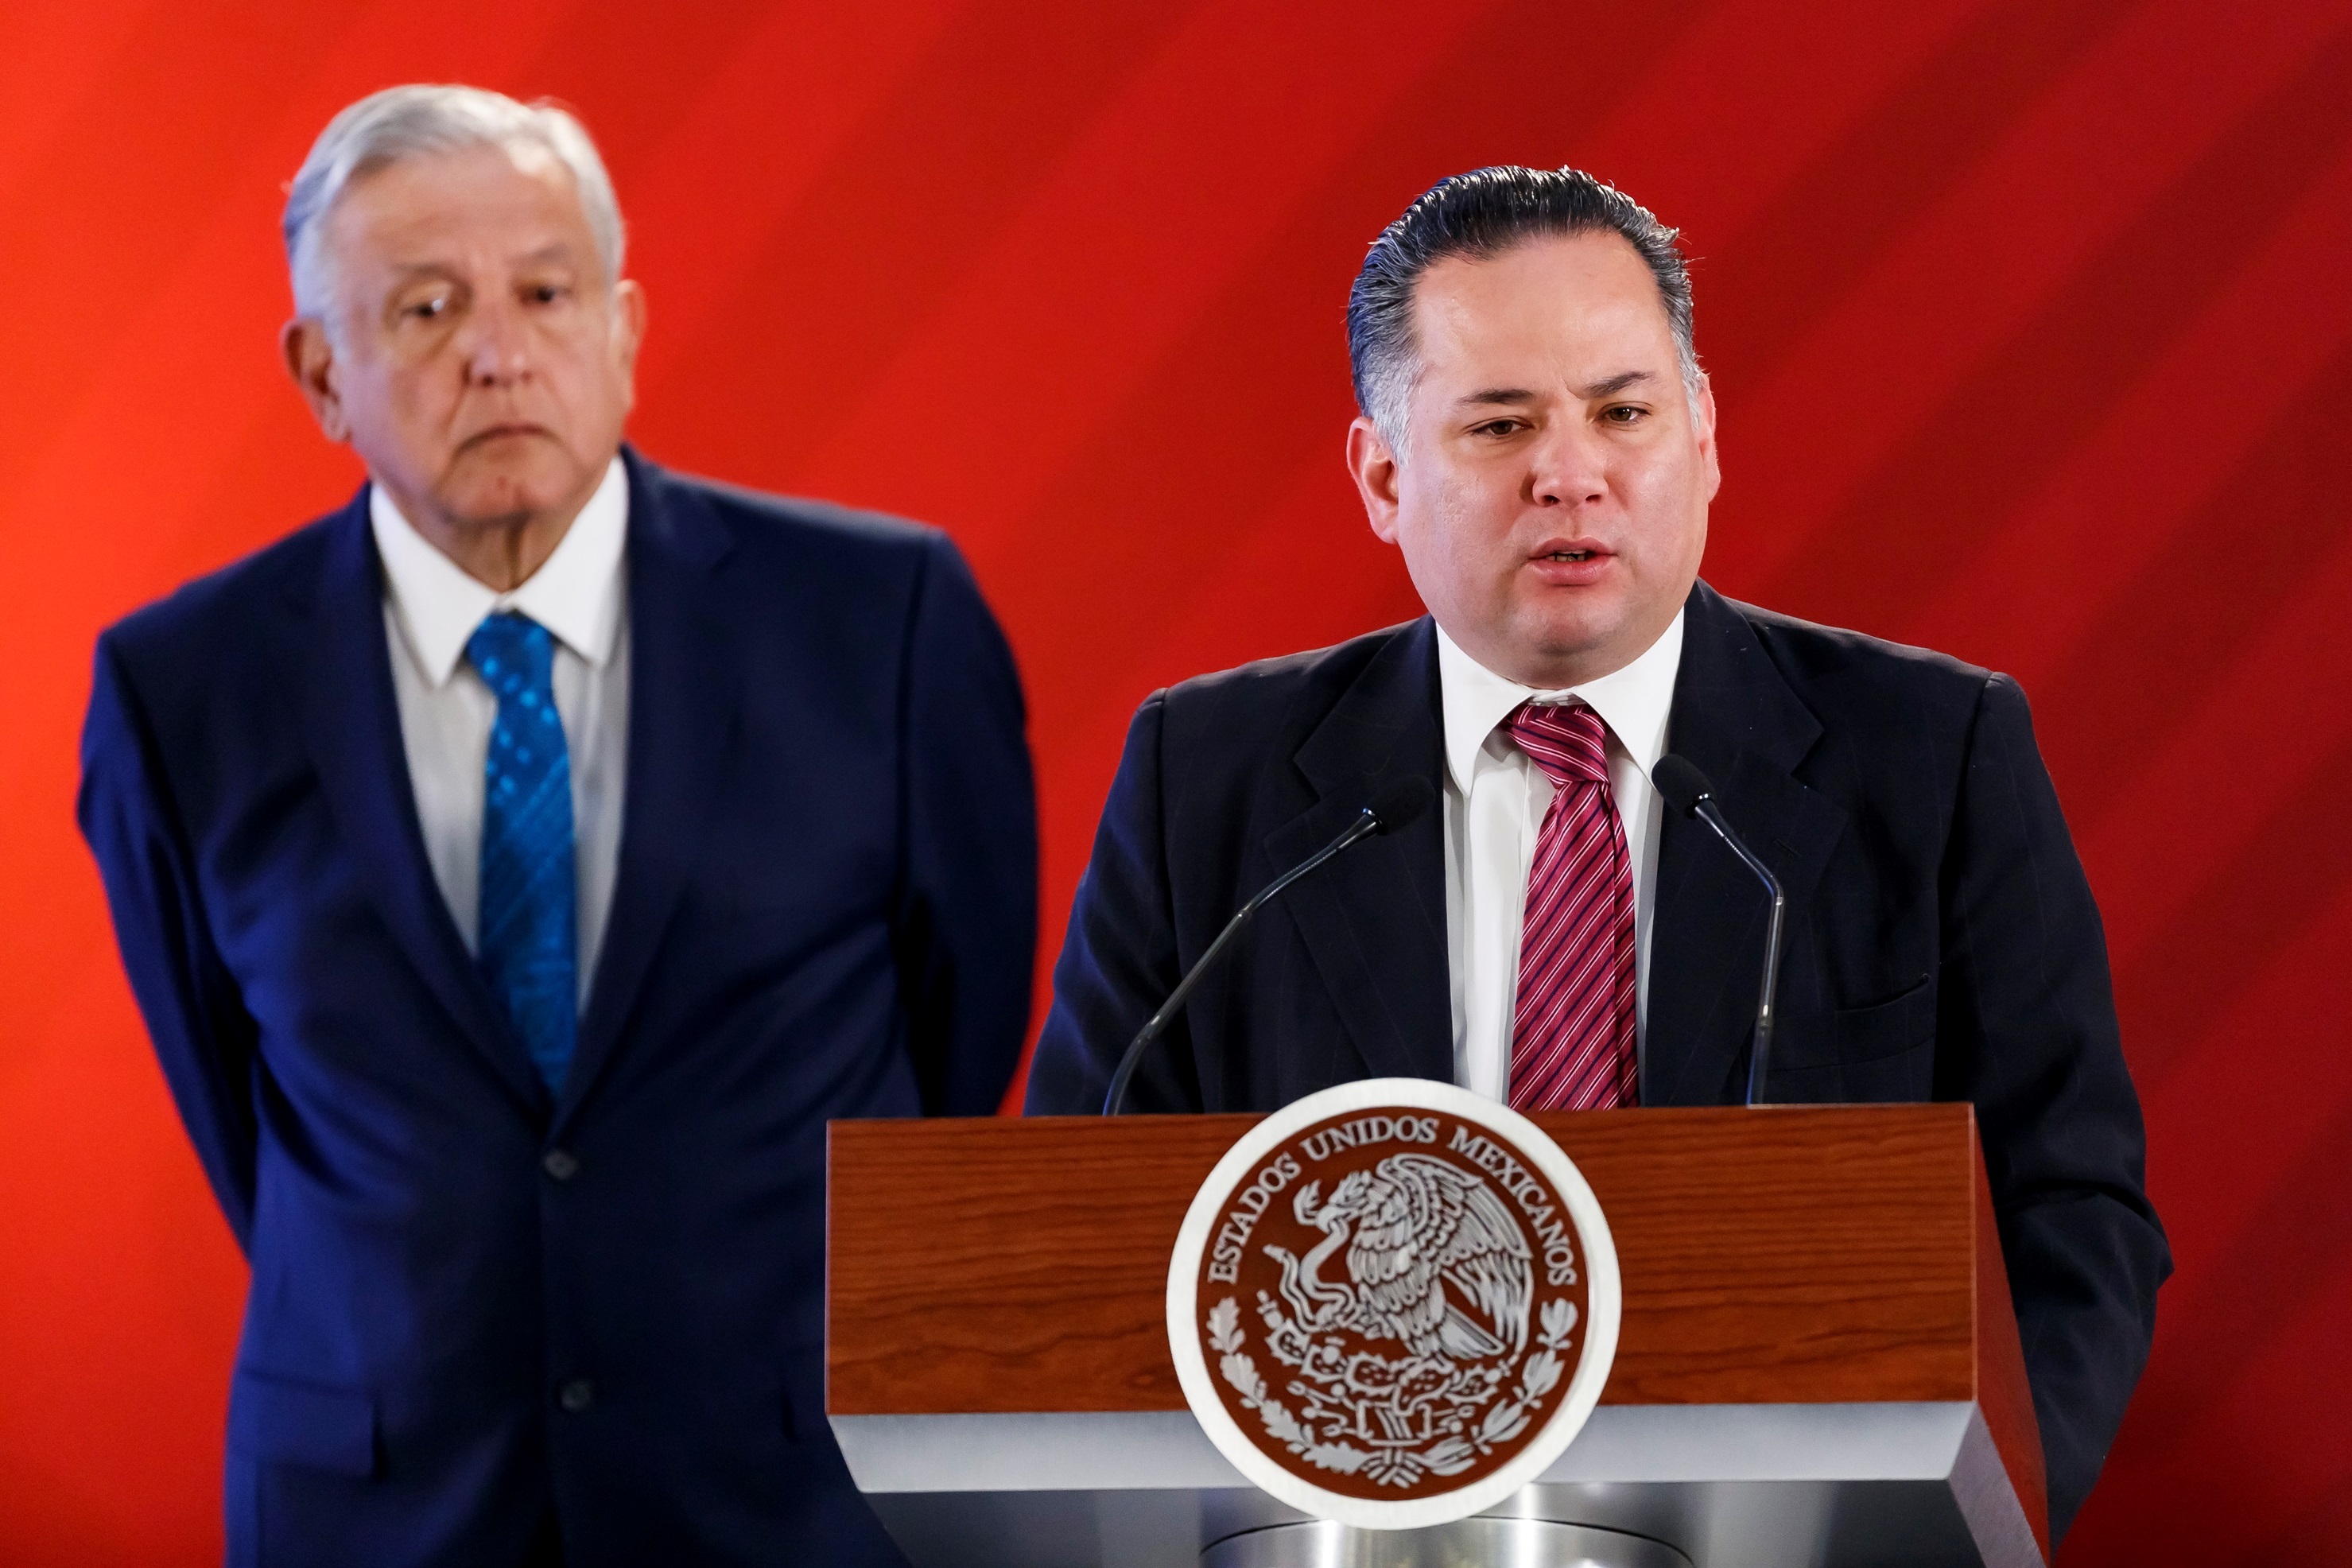 Santiago Nieto enfrenta una Carpeta de Investigación por supuesta adquisición de vienes inmuebles millonarios

Foto: EFE/ José Méndez
